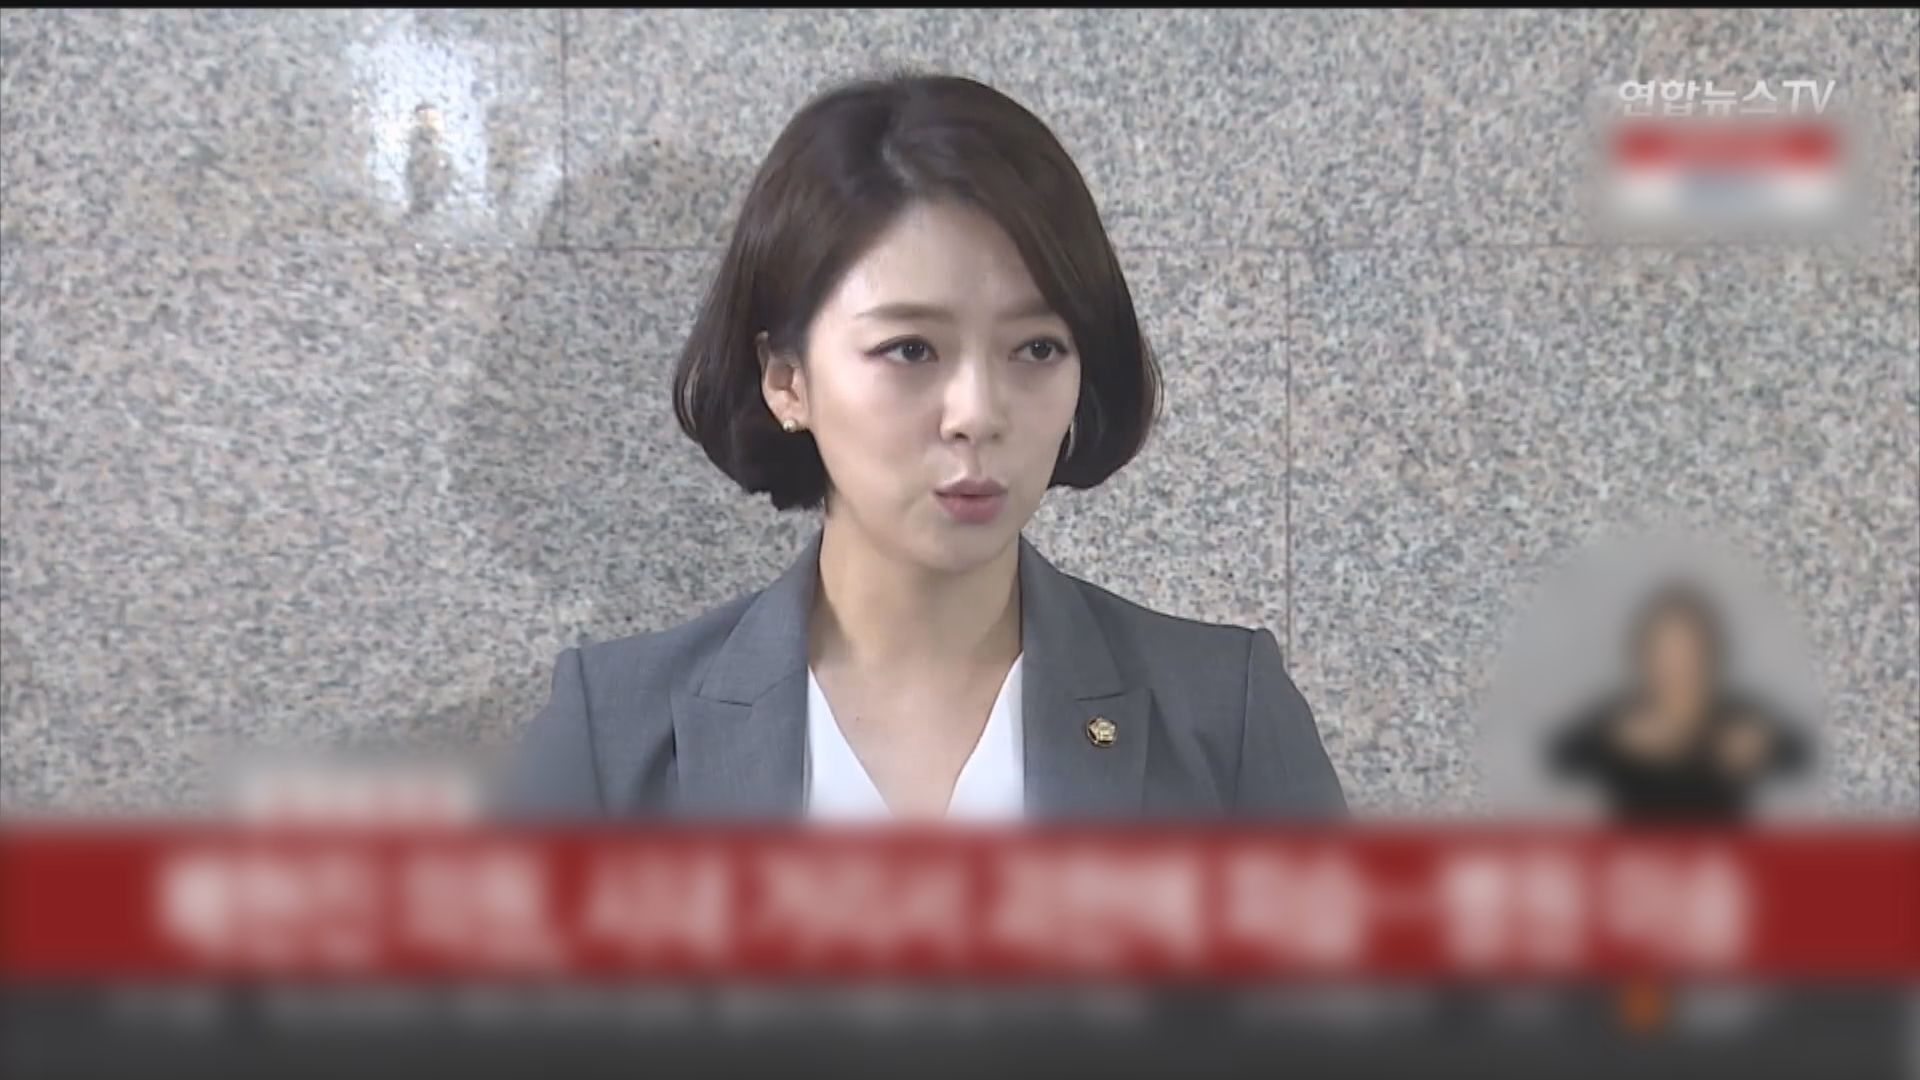 南韓國會議員在首爾遇襲受傷 疑犯被捕